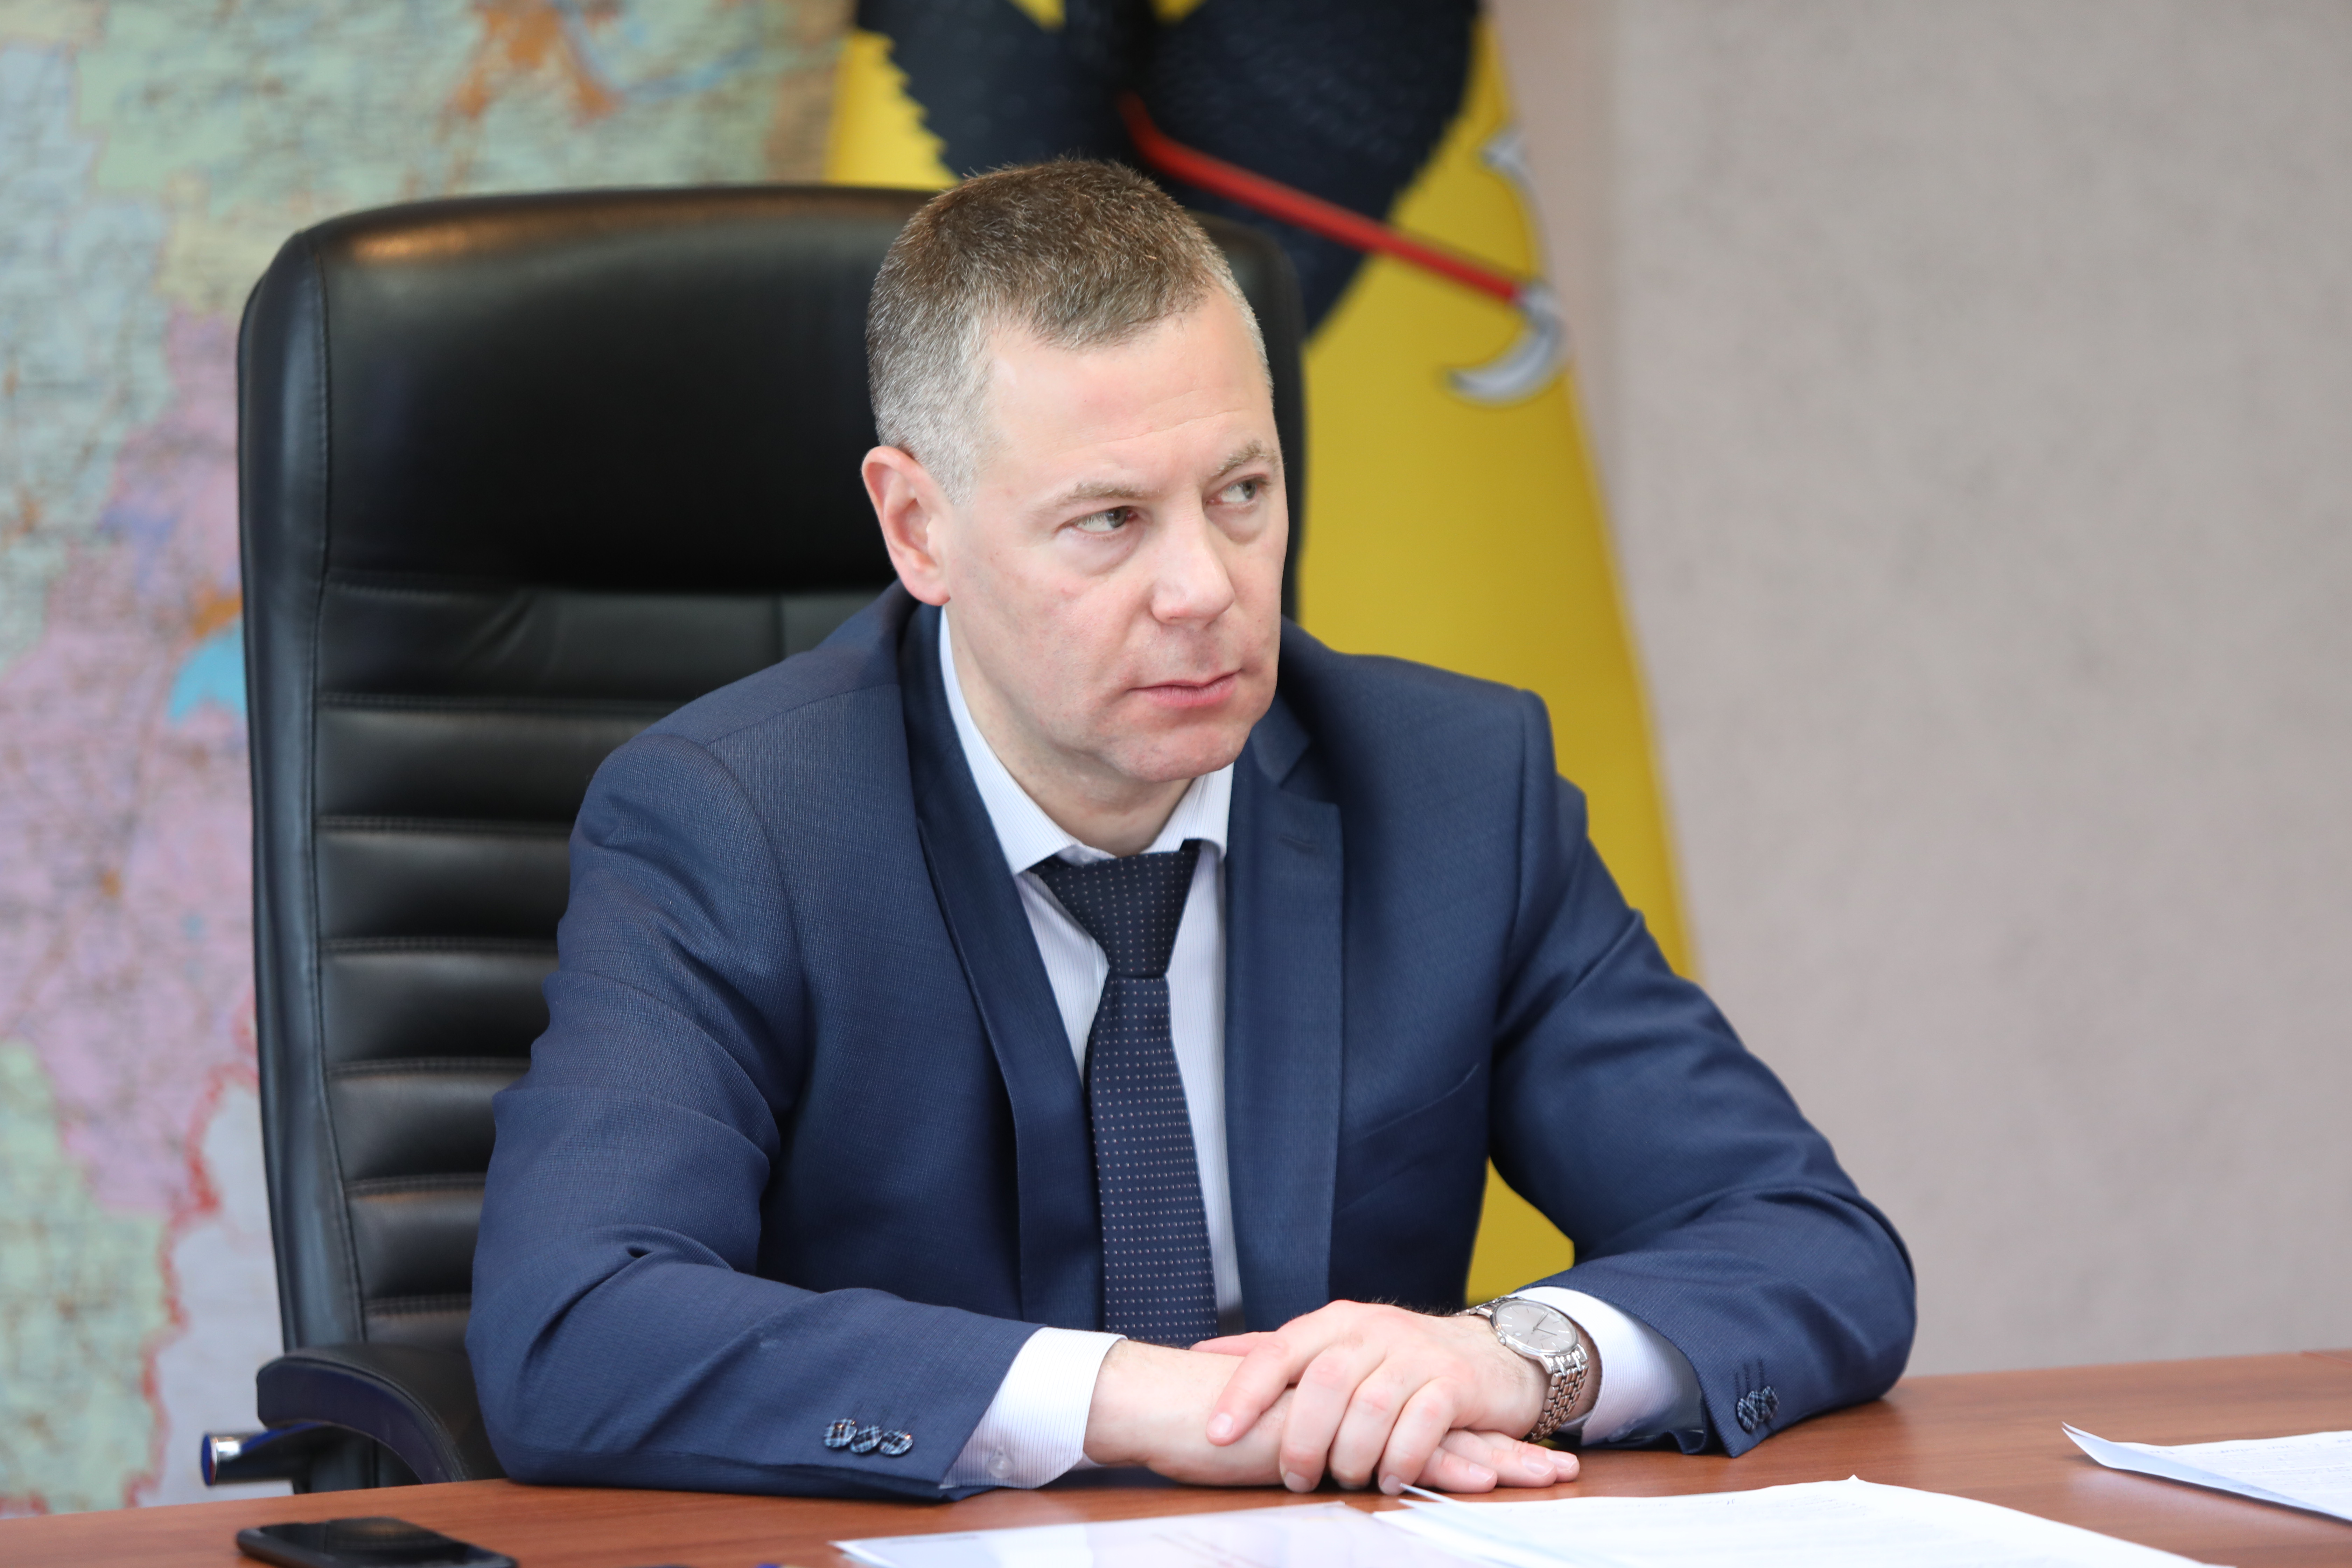 Глава региона Михаил Евраев объявил о двух миллионах рублей на поддержку жителей области